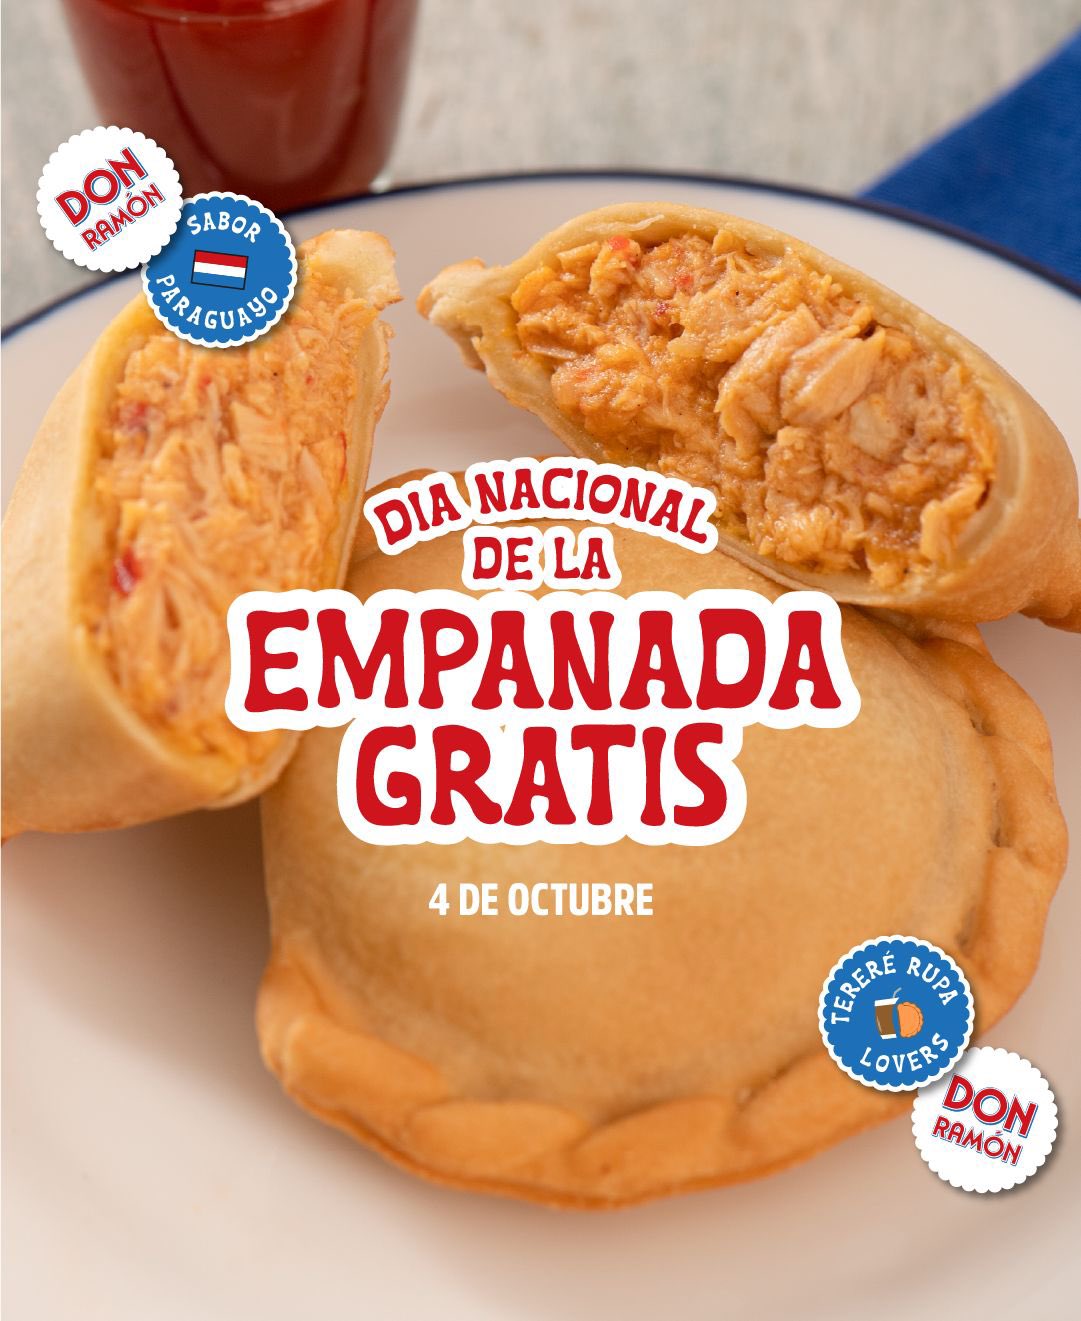 ¡Este lunes, “Don Ramón” regalará 3.000 empanadas!